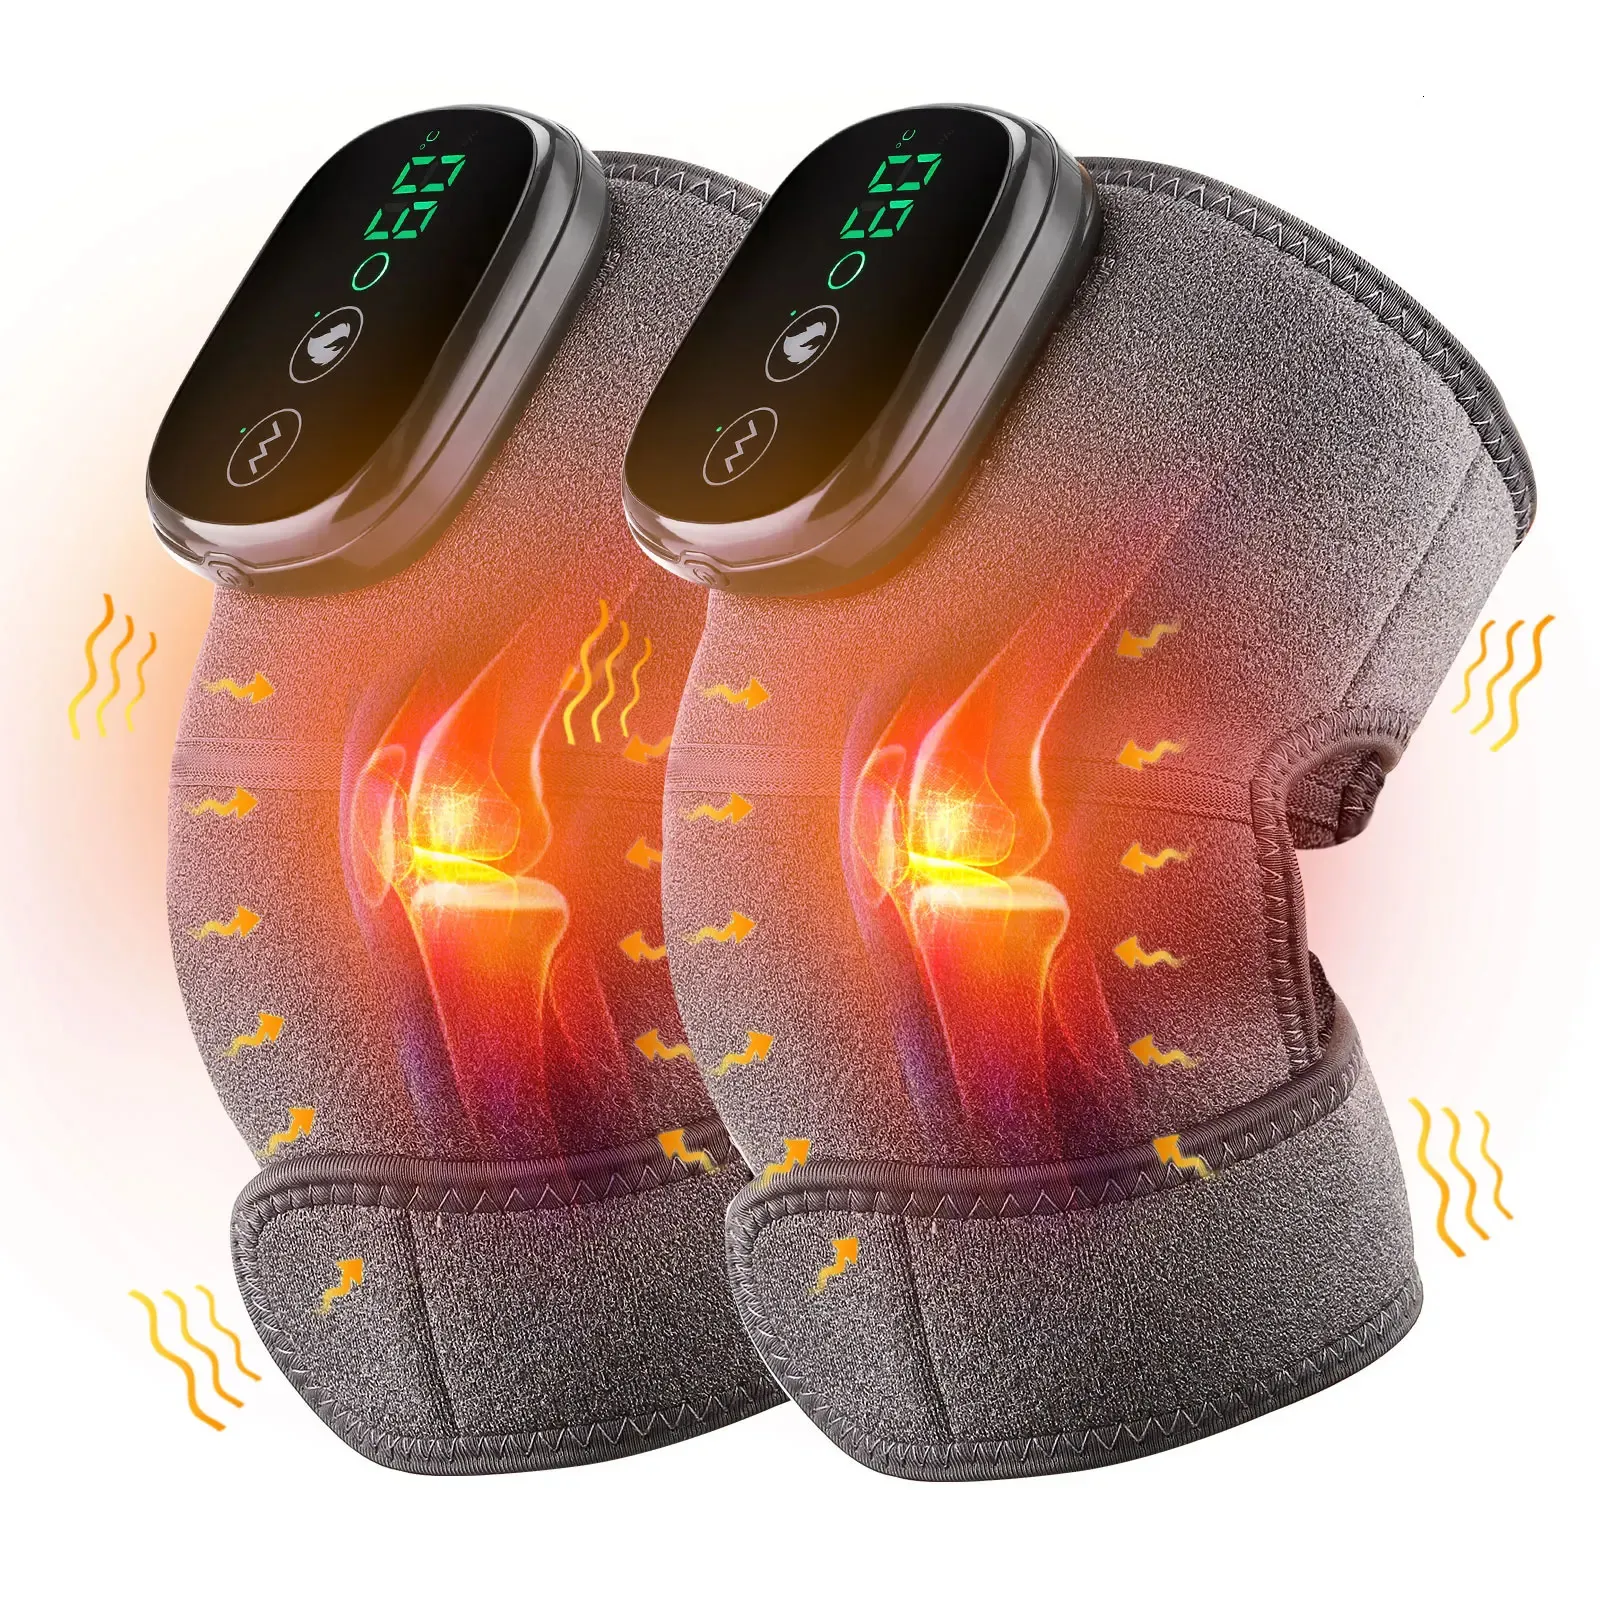 Eletrisk uppvärmnings knämassageanordning vibration fysioterapi knäskydd för armbågsled artros reumatisk smärta varm massage 240105